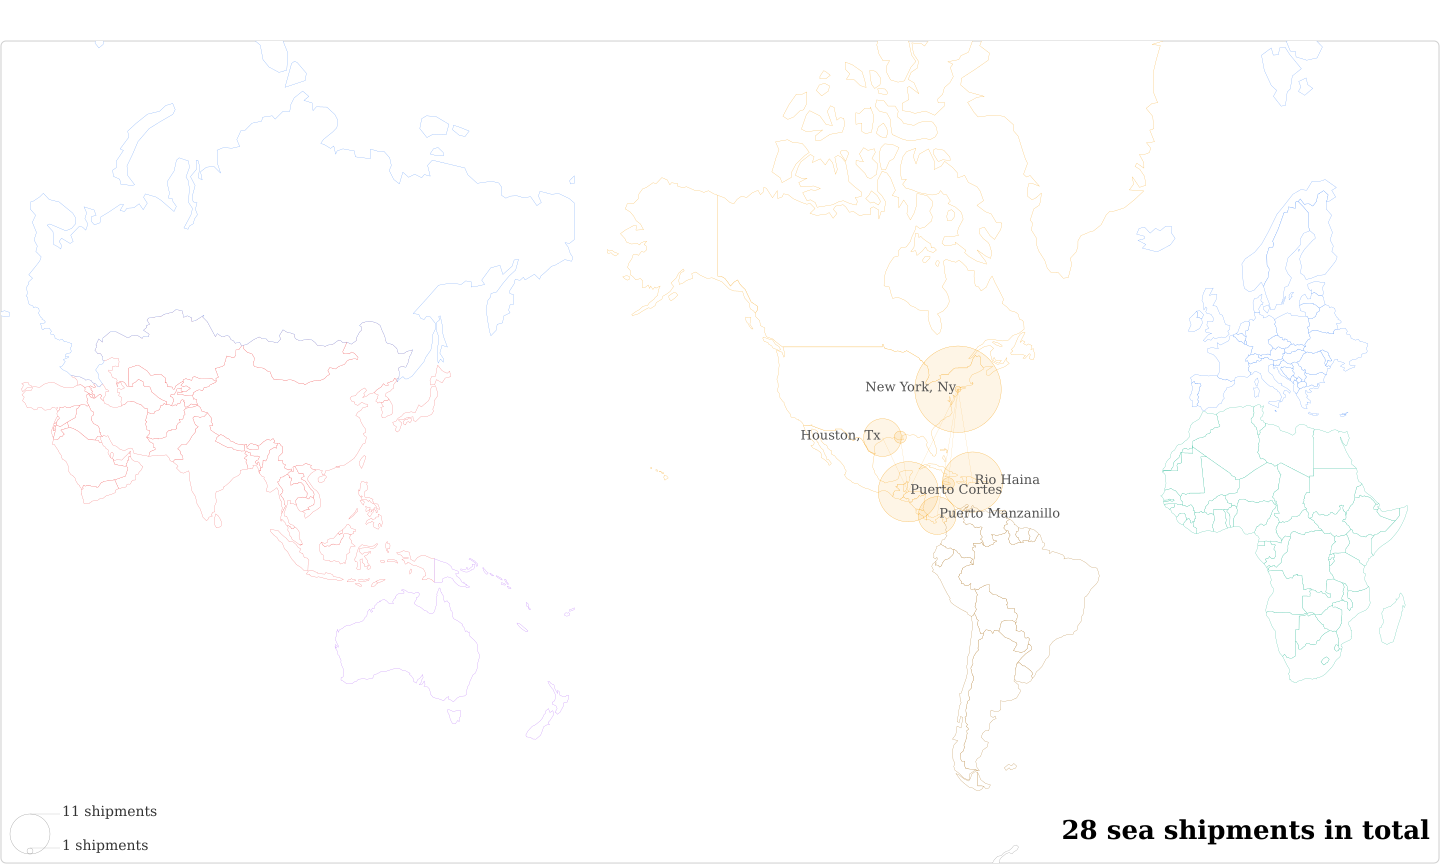 Comercial Exportadora De Cafe San Bo Guamilito's Imports Per Country Map